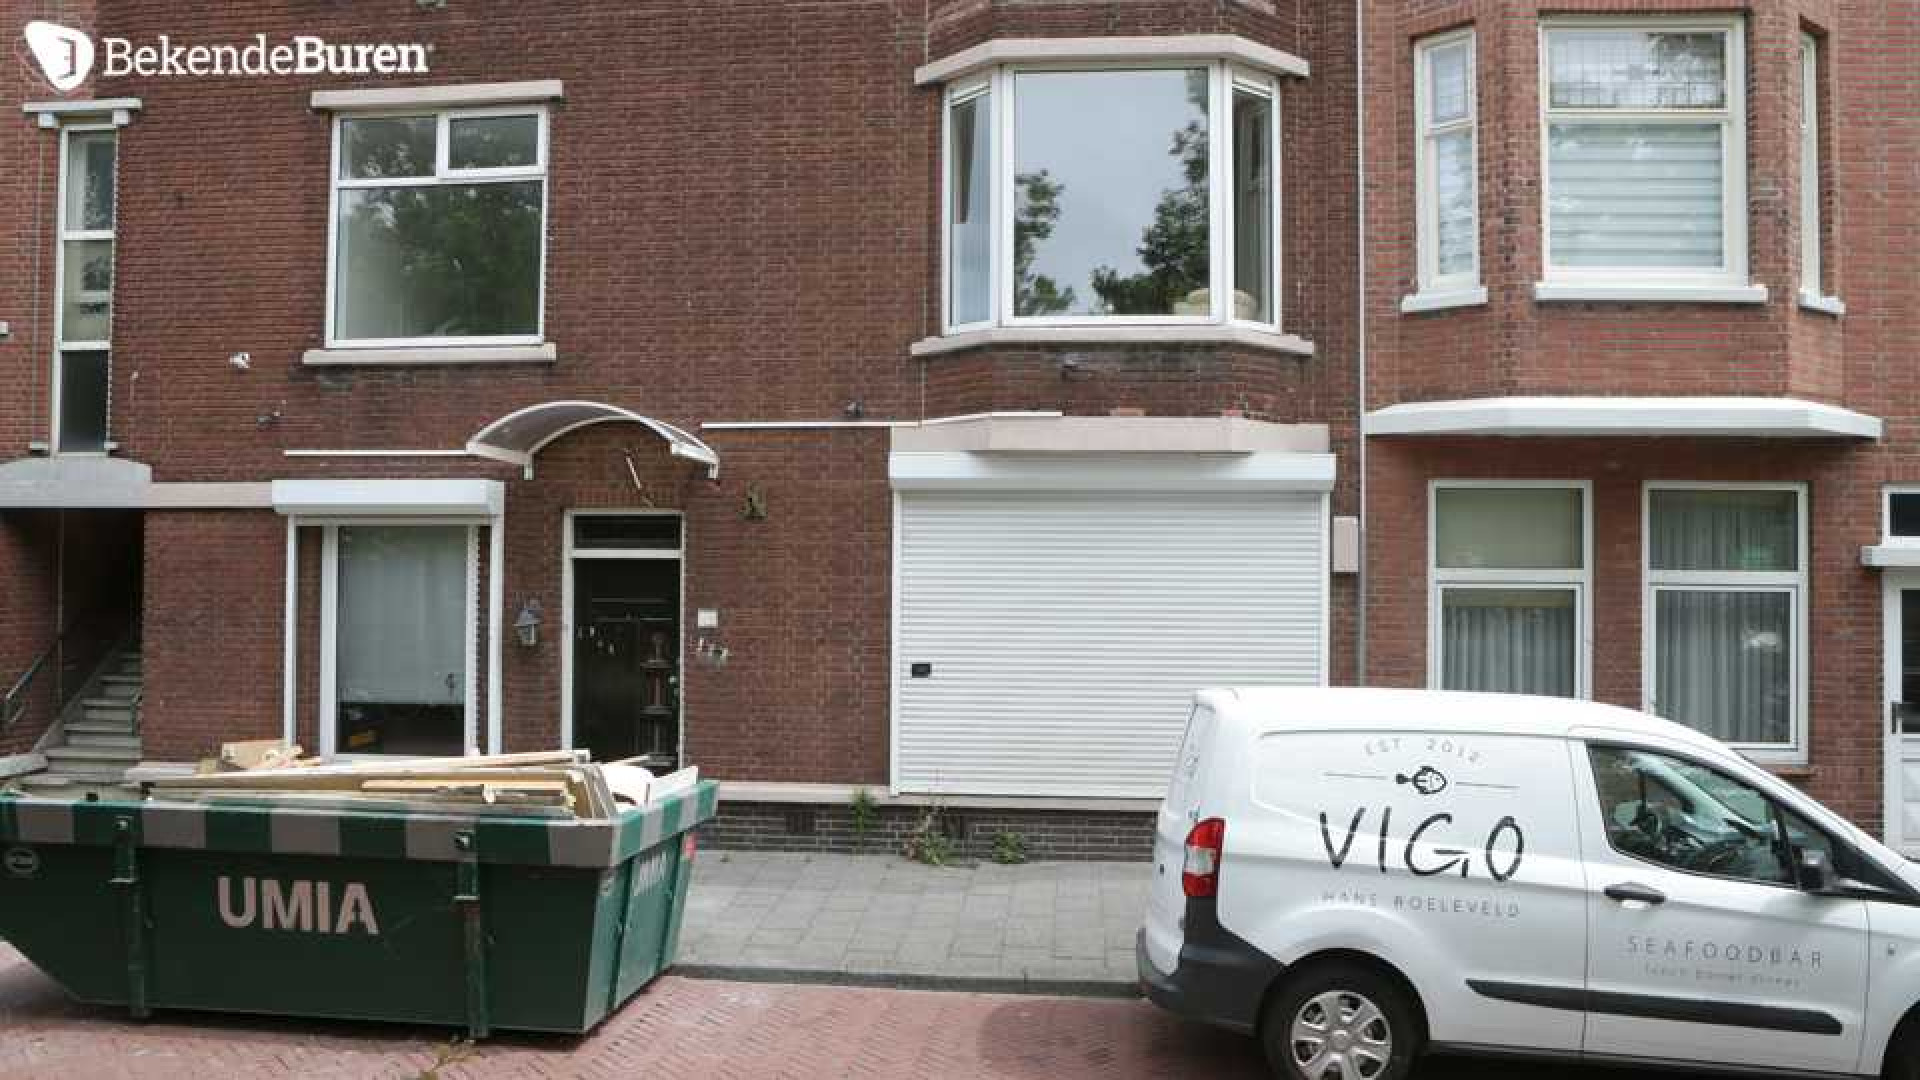 Bibi Breijman druk aan het verbouwen aan haar Haagse woning! Zie foto's